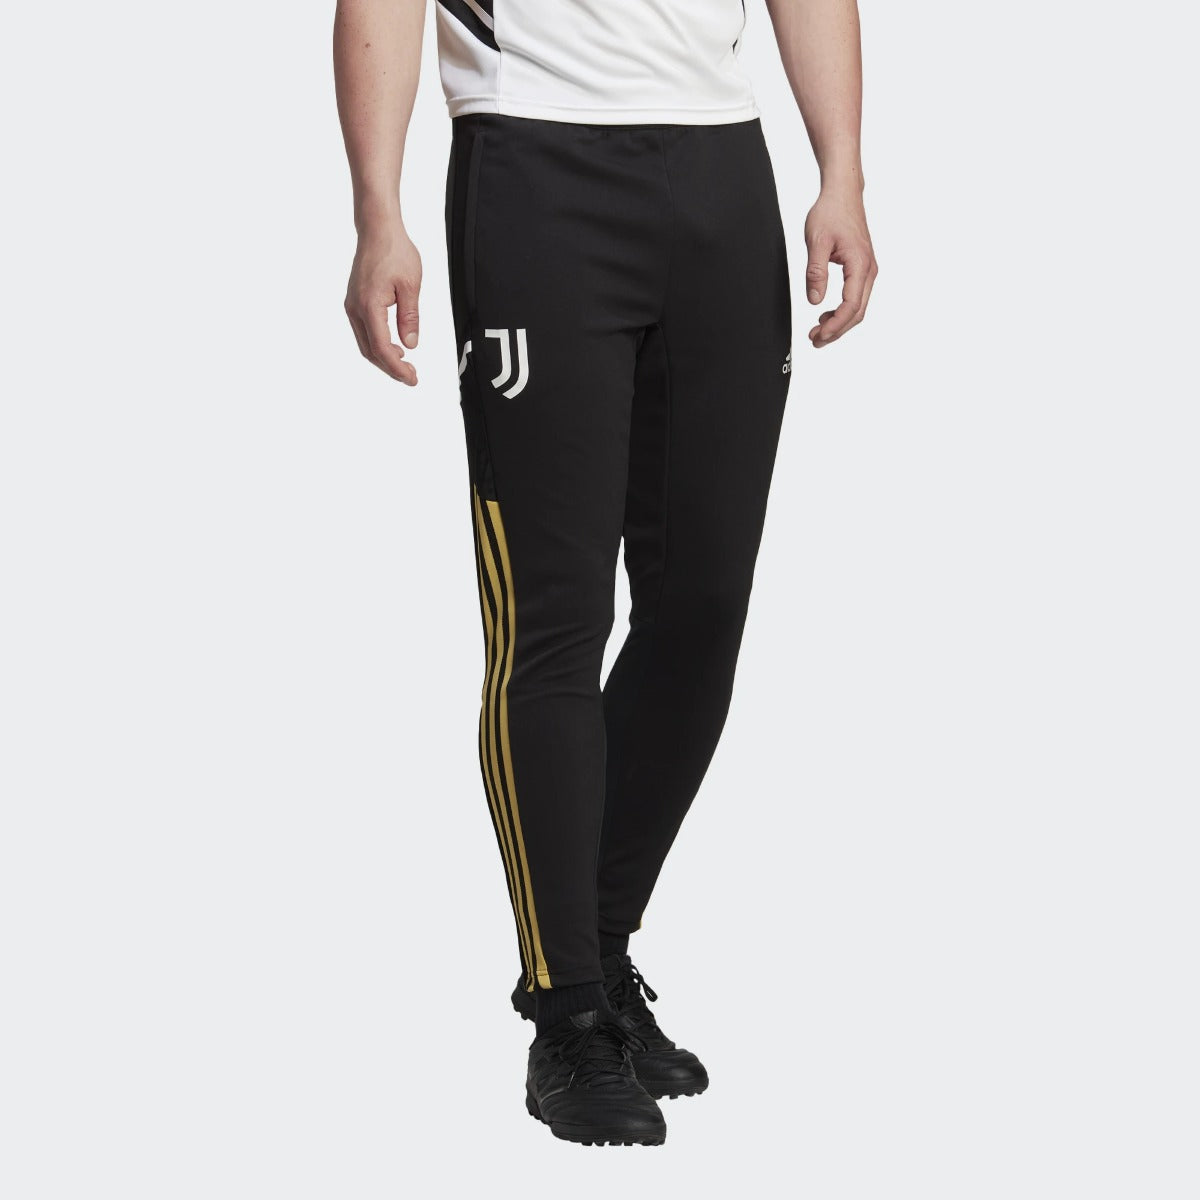 Juventus 2022/2023 training pants - Black/White/Gold